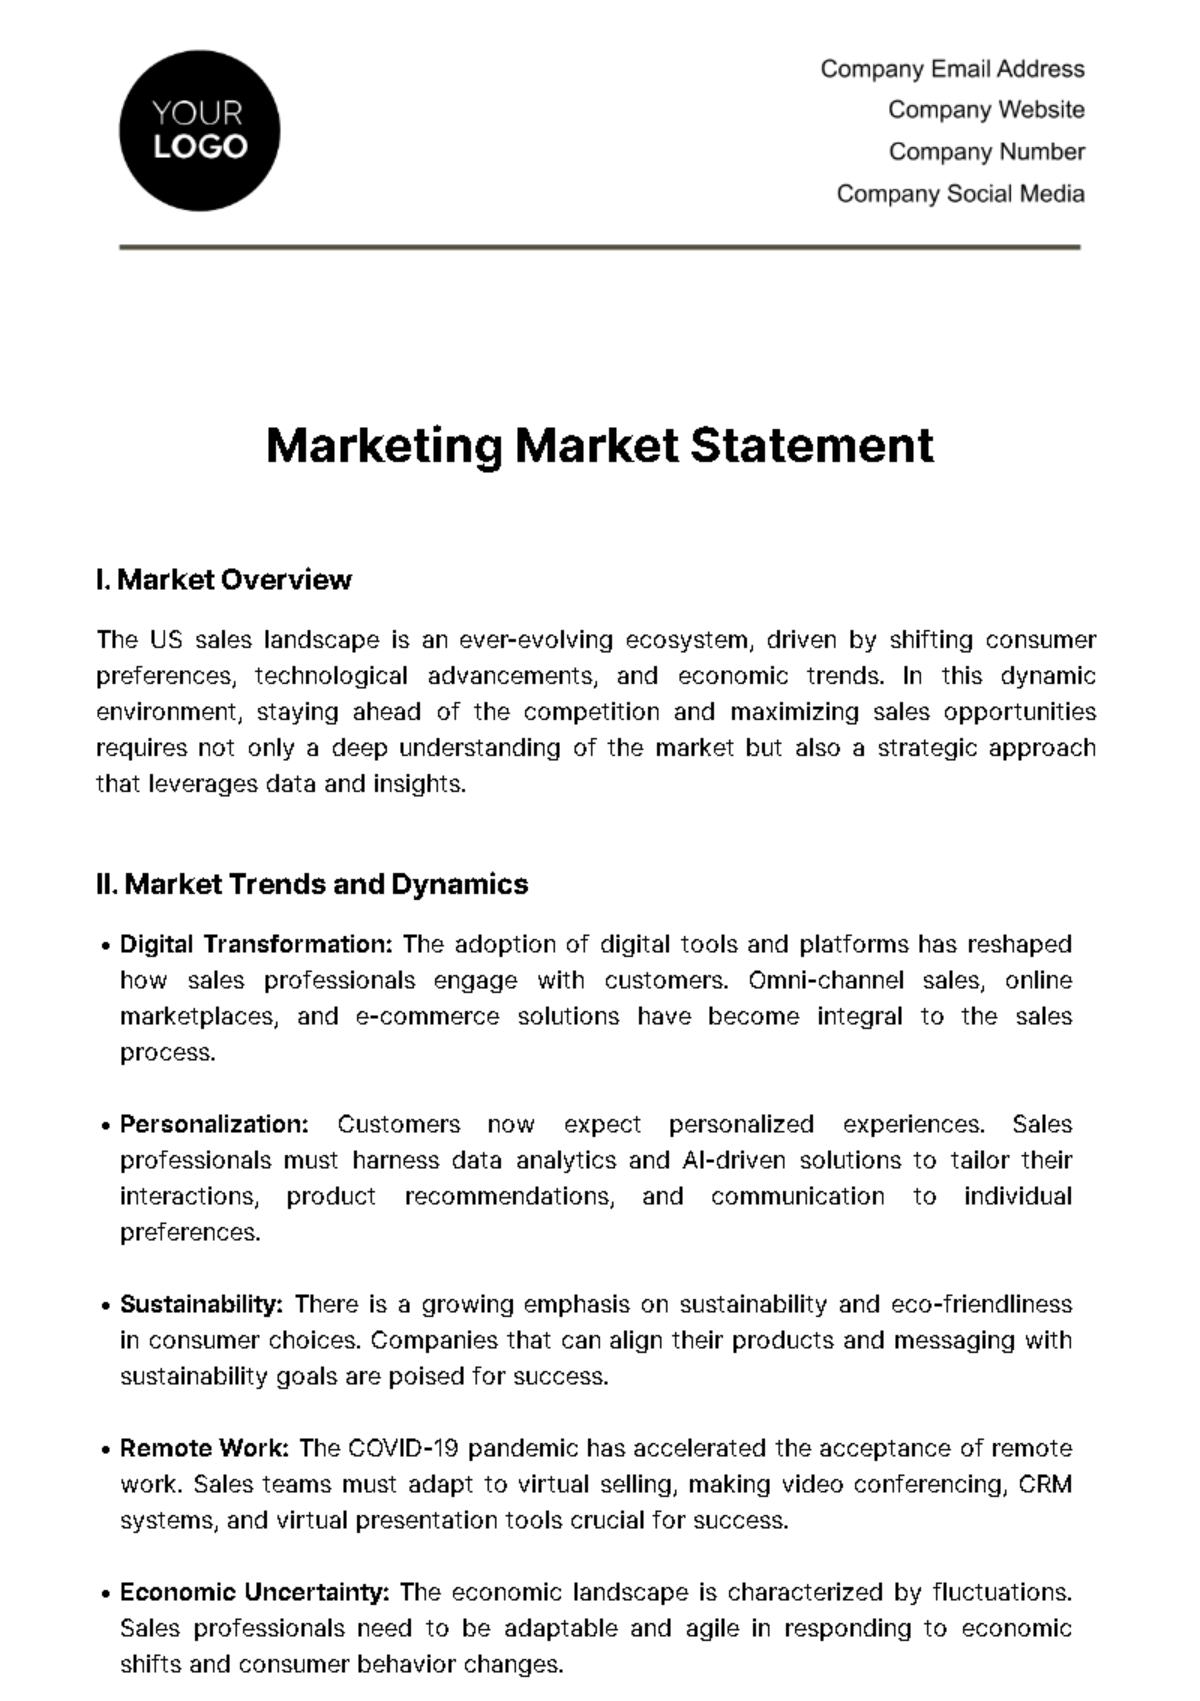 Marketing Market Statement Template